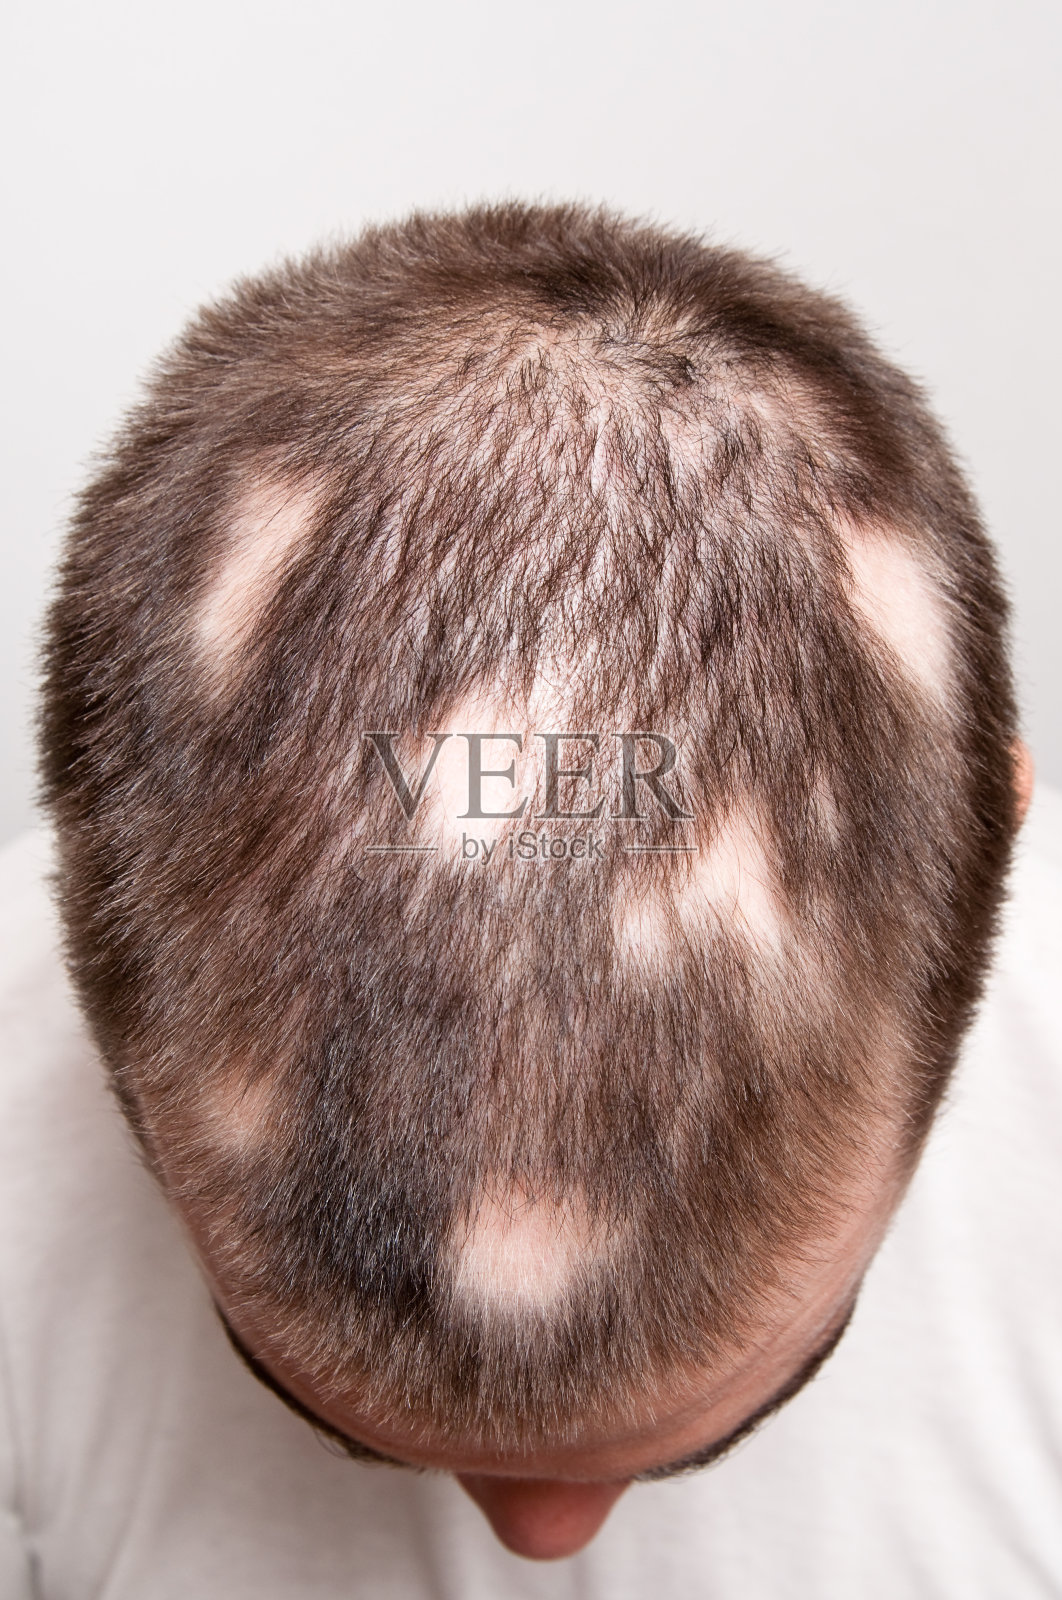 男人遭受脱发引起的秃斑照片摄影图片